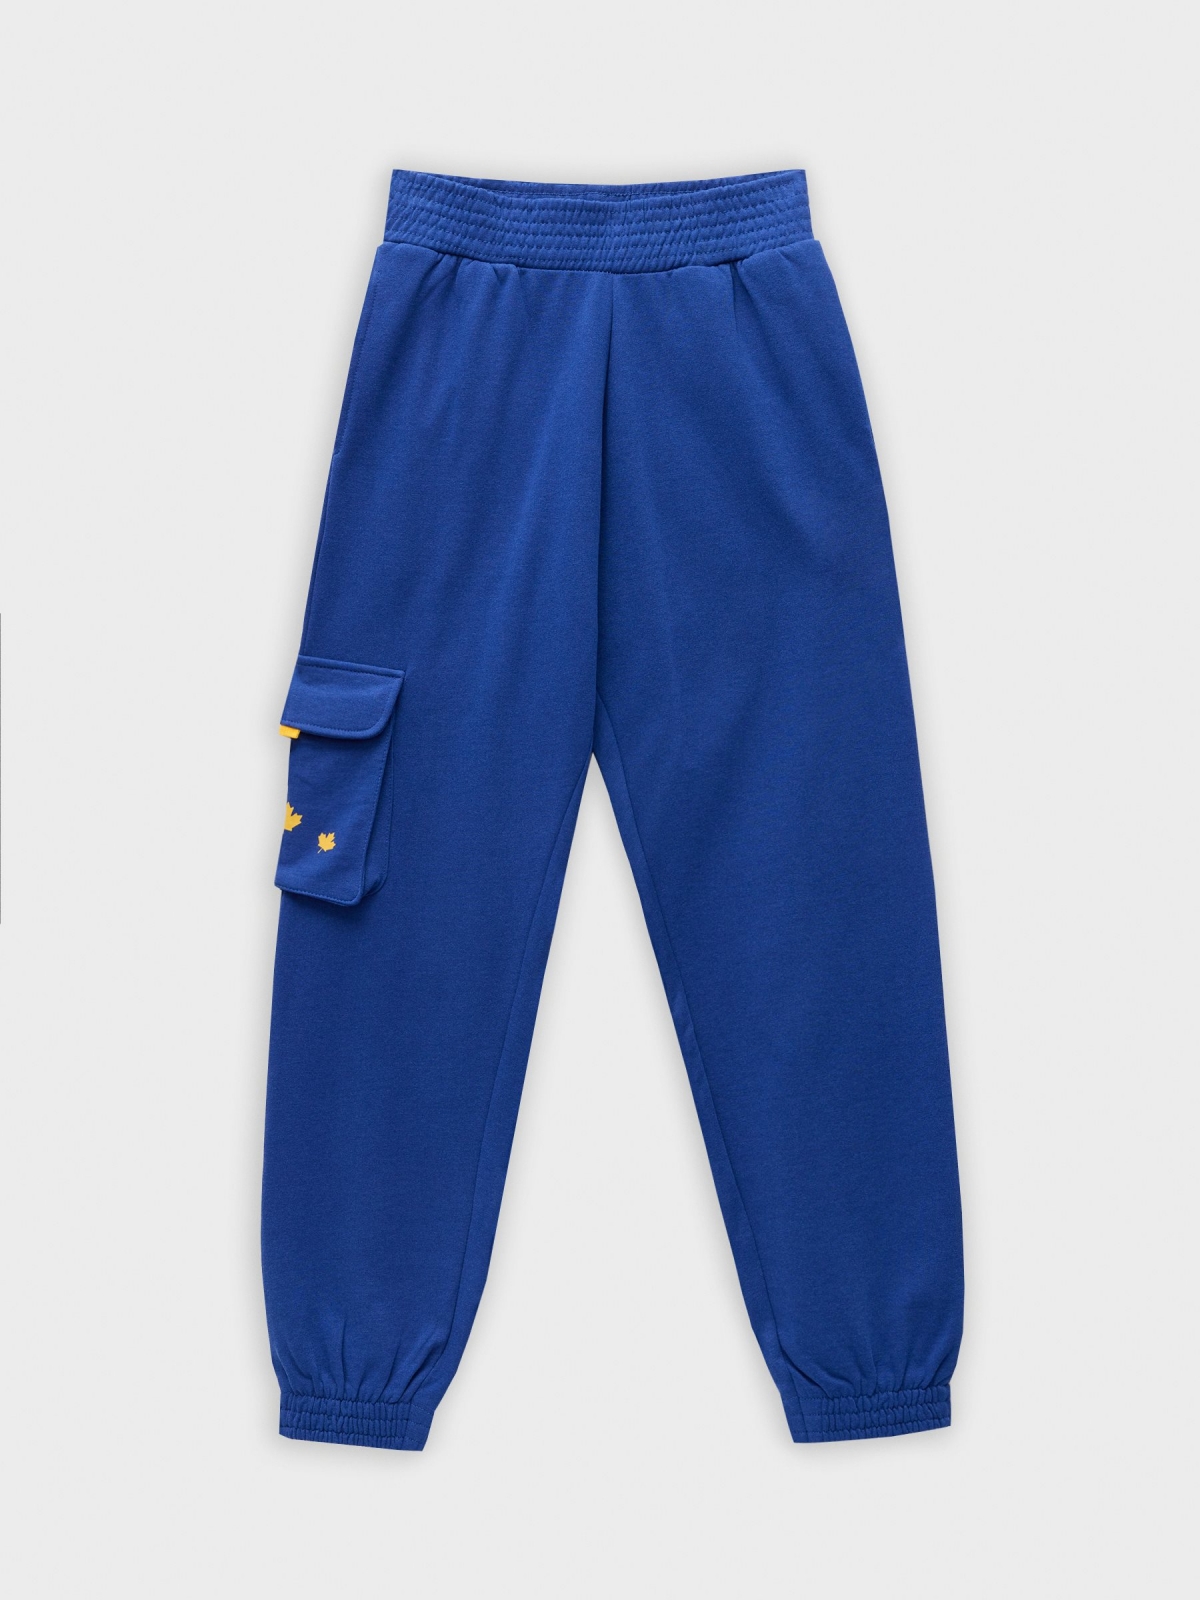  Pantalón jogger azul añil